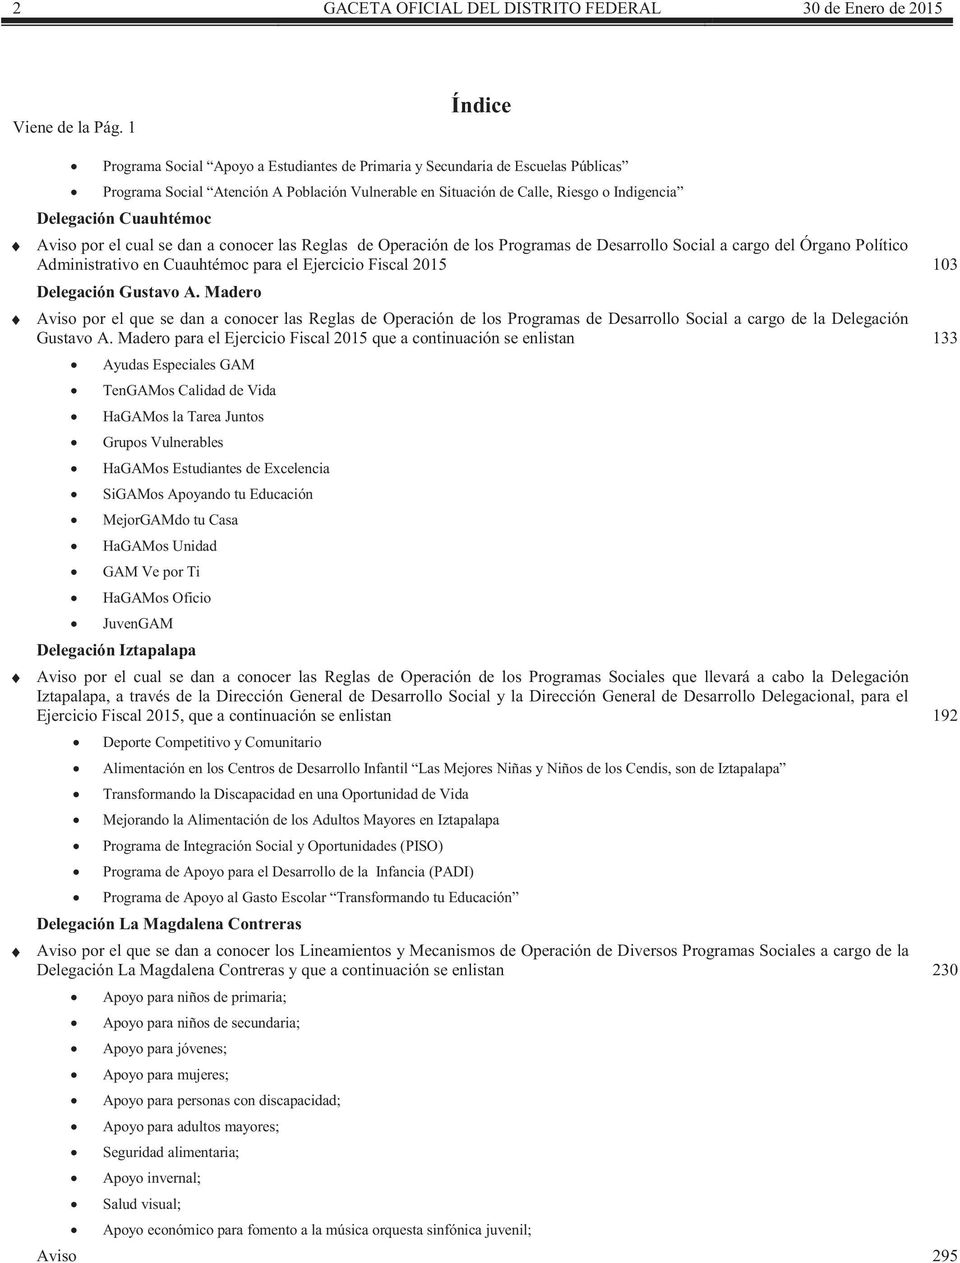 Cuauhtémoc Aviso por el cual se dan a conocer las Reglas de Operación de los Programas de Desarrollo Social a cargo del Órgano Político Administrativo en Cuauhtémoc para el Ejercicio Fiscal 2015 103